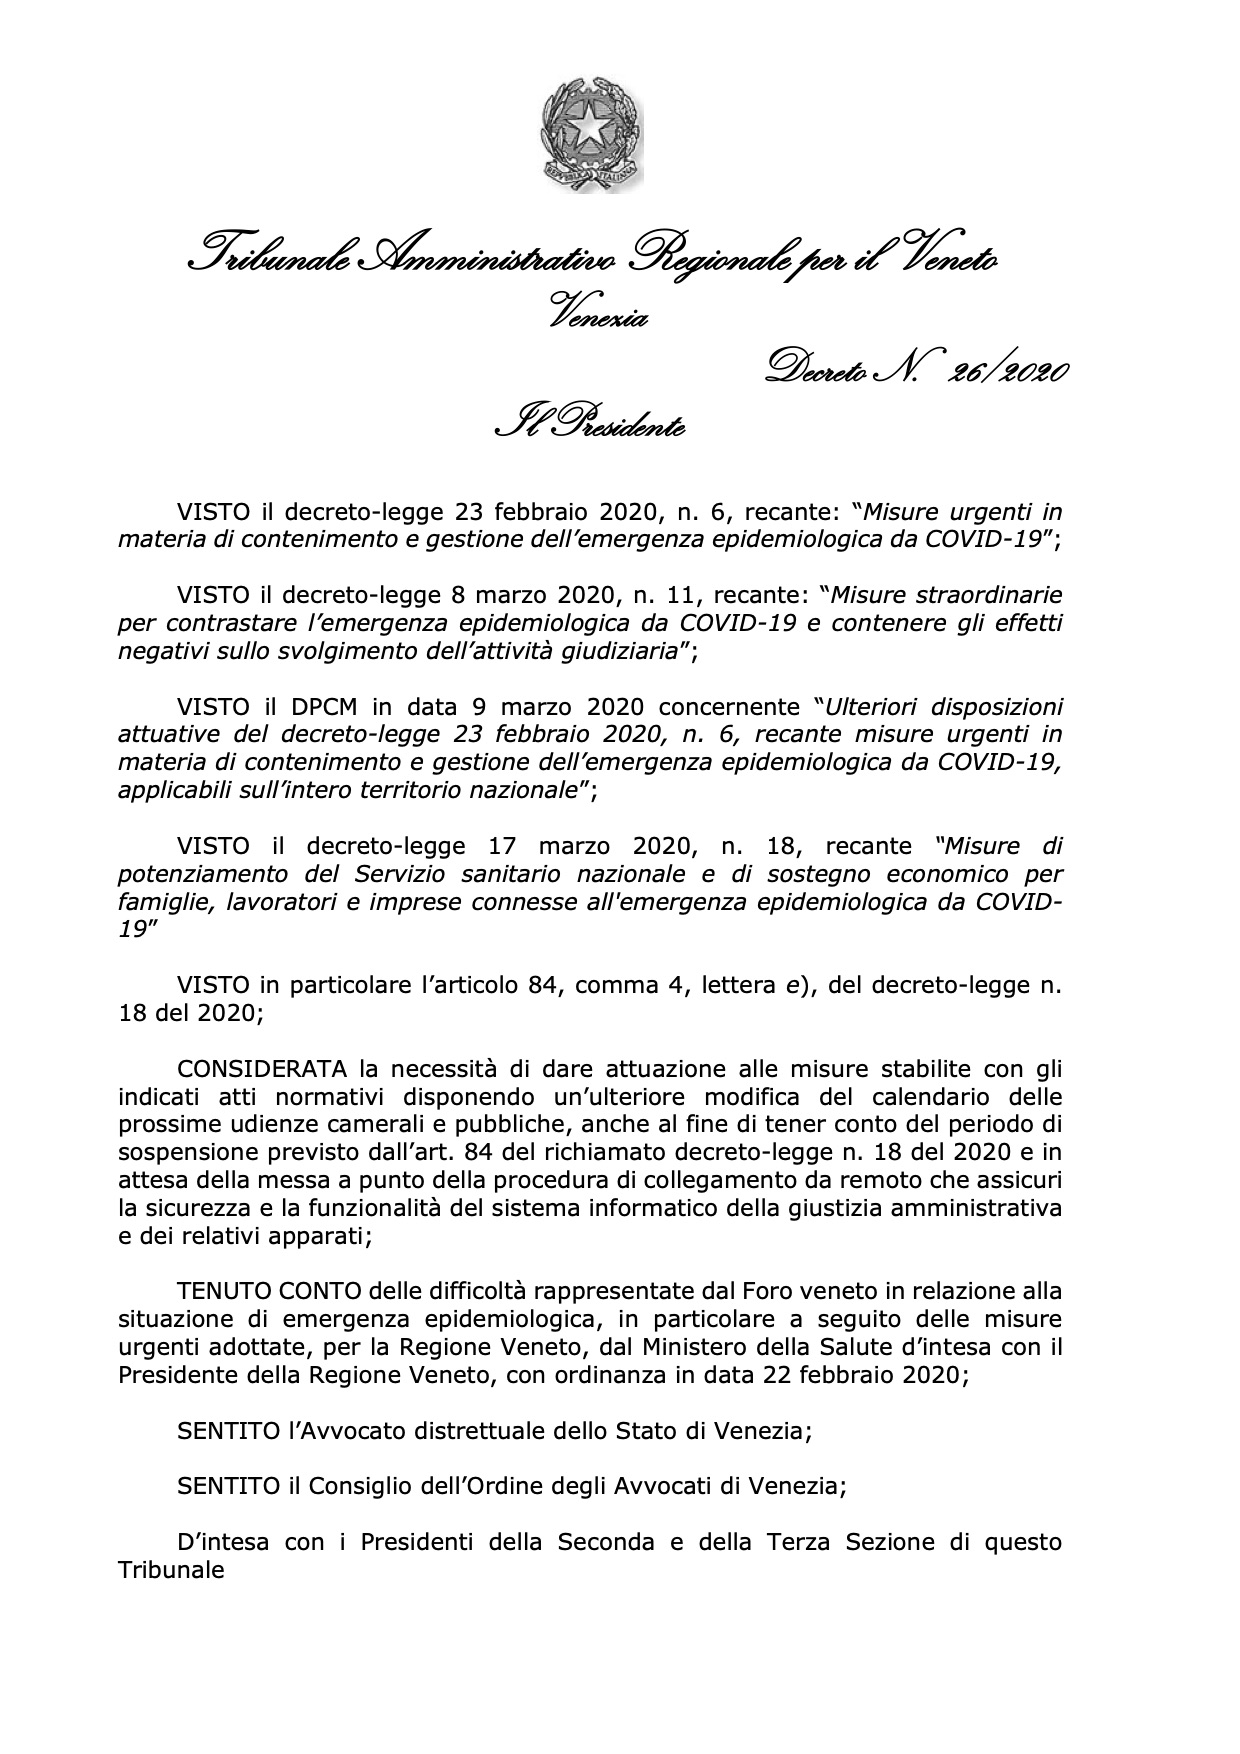 Dec. n. 26-2020 Presidente TAR Veneto - Ulteriori misure urgenti per COVID-19-21 marzo 2020